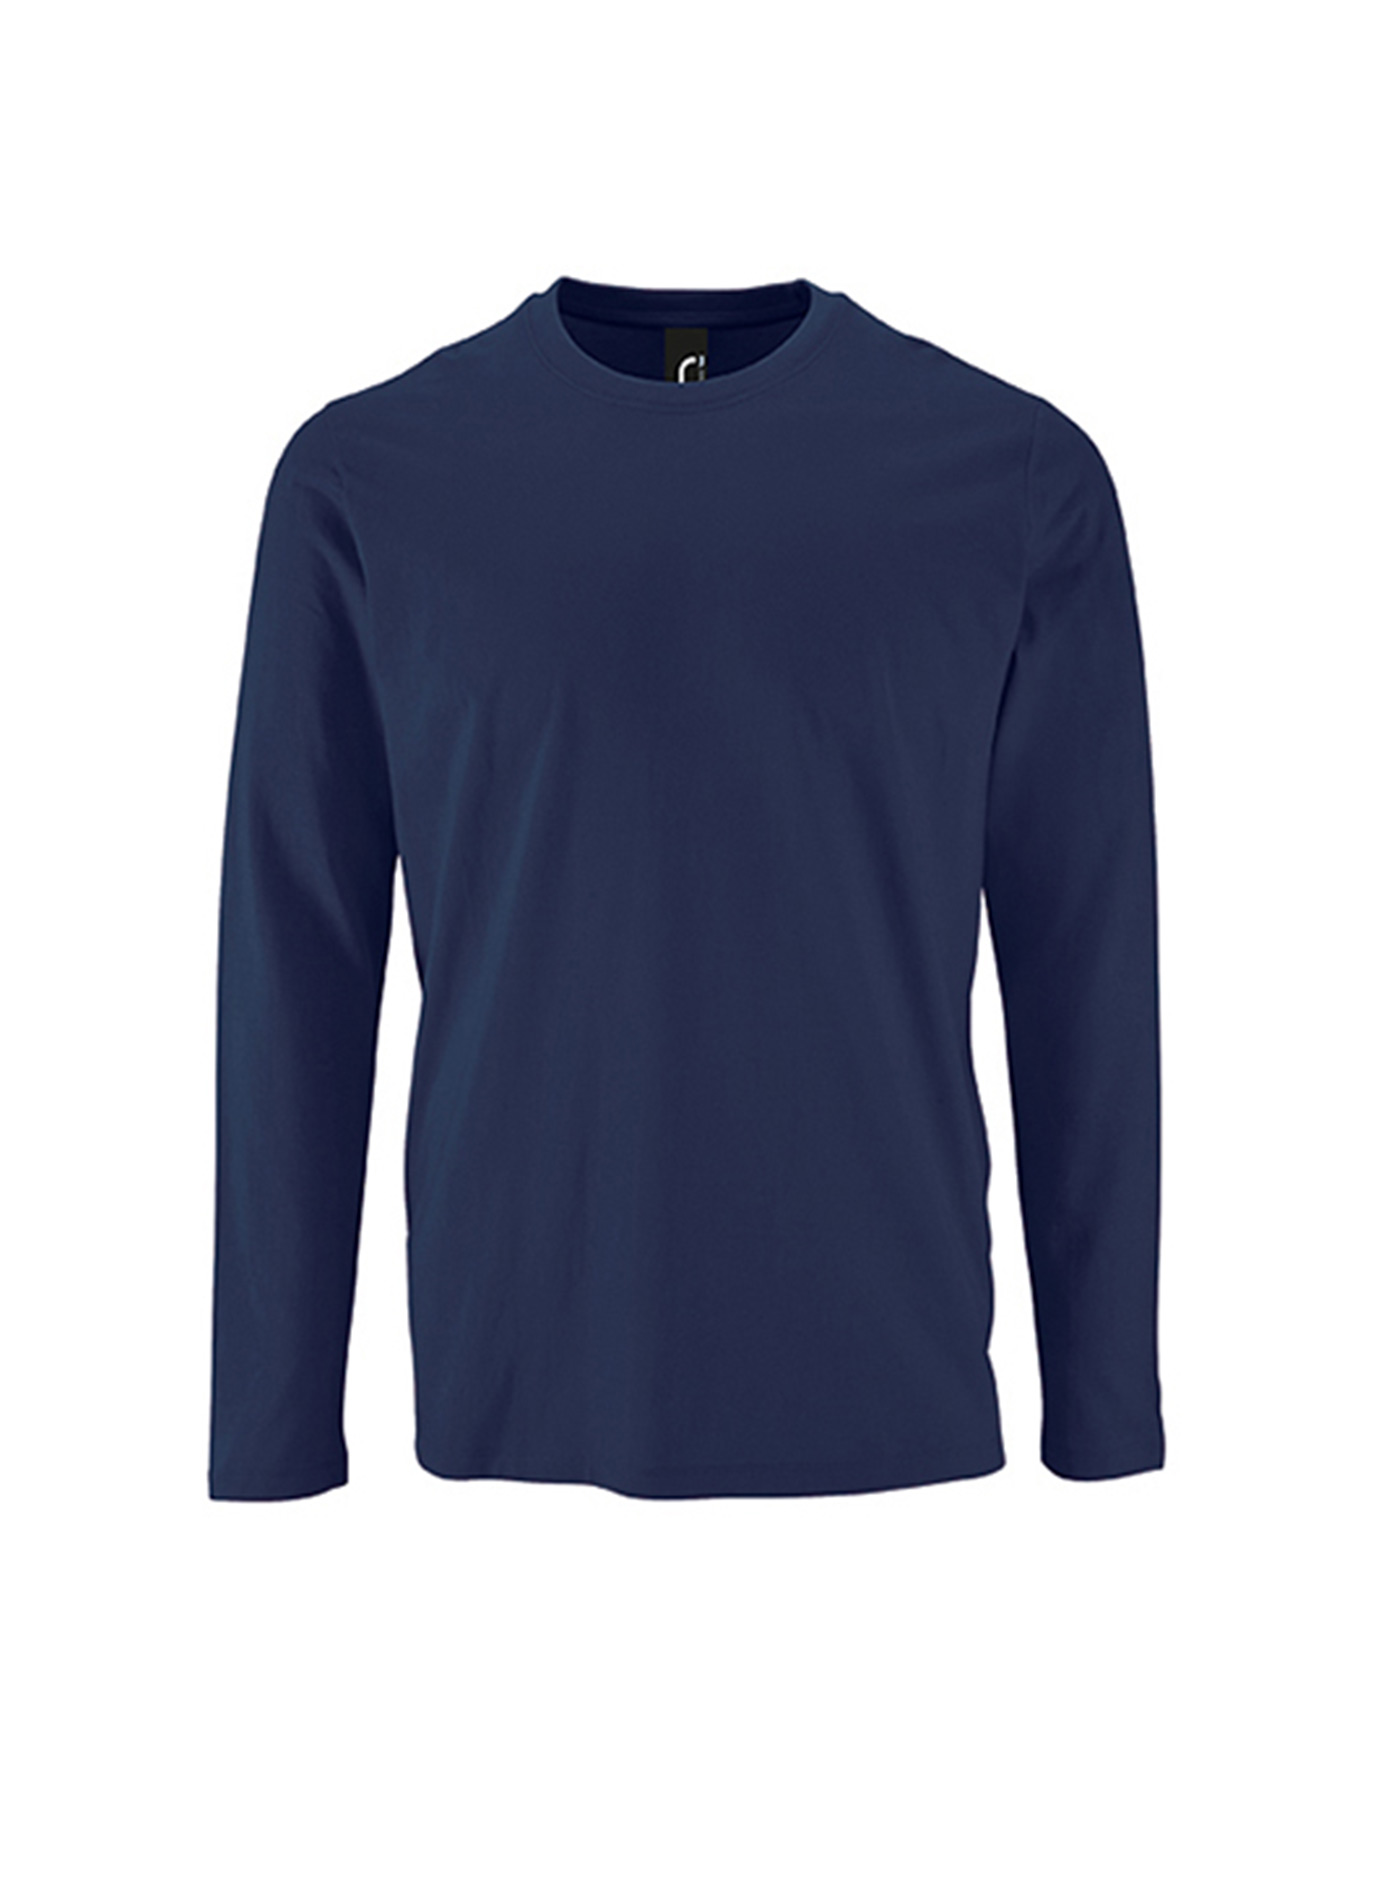 Pánské tričko s dlouhým rukávem SOL´S Imperial - Námořnická modrá XS